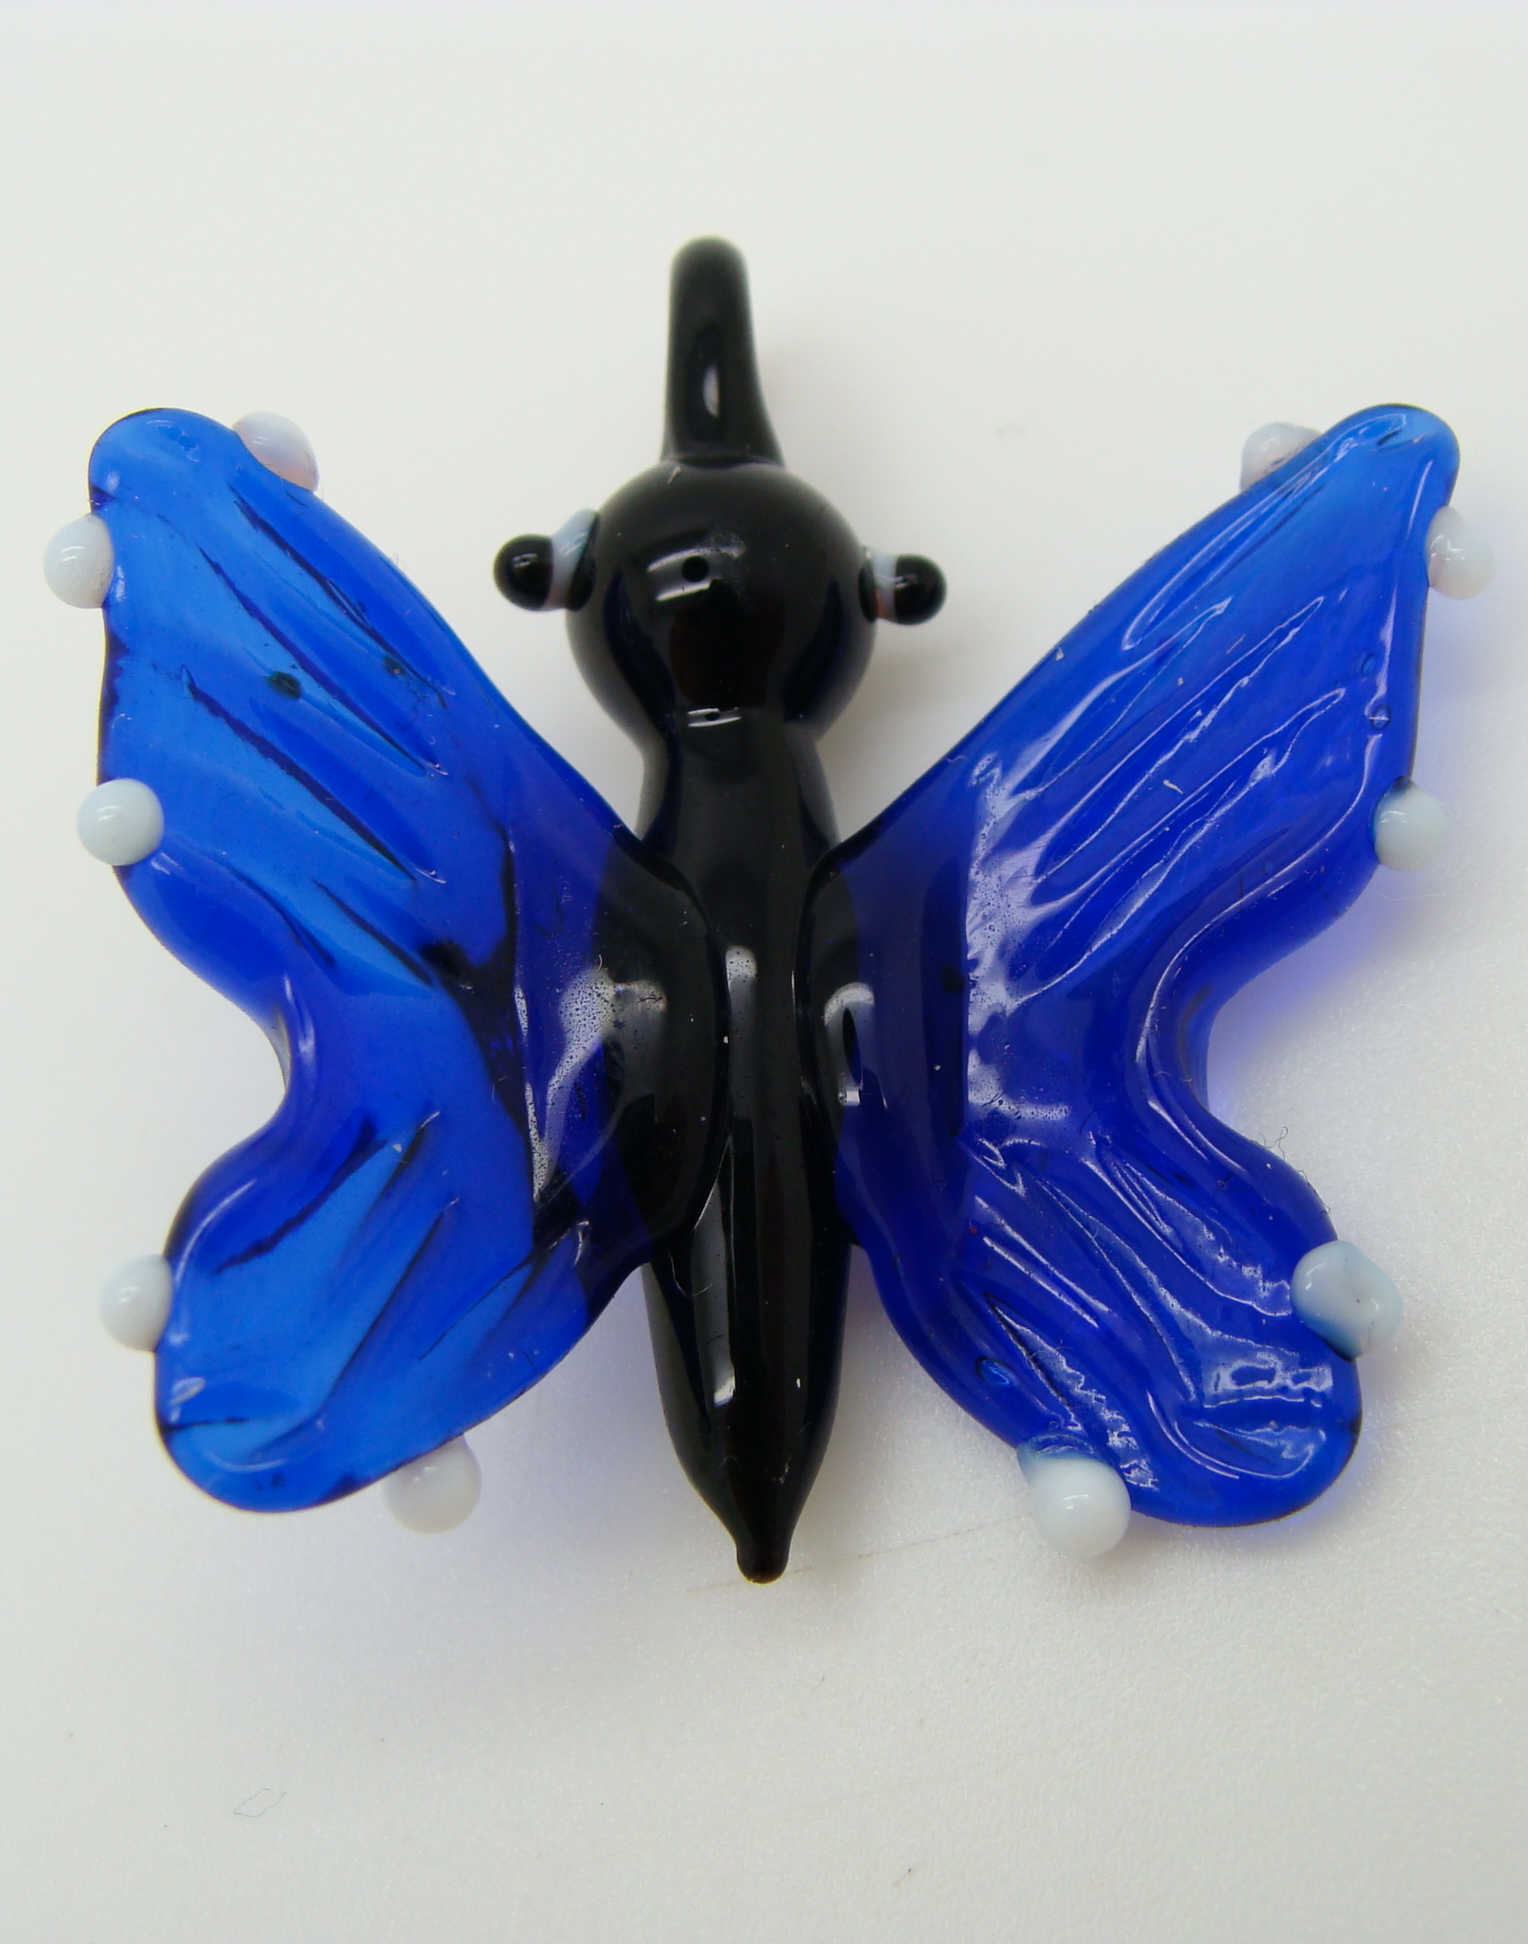 Pend-305-2 pendentif papillon marine noir lampwork